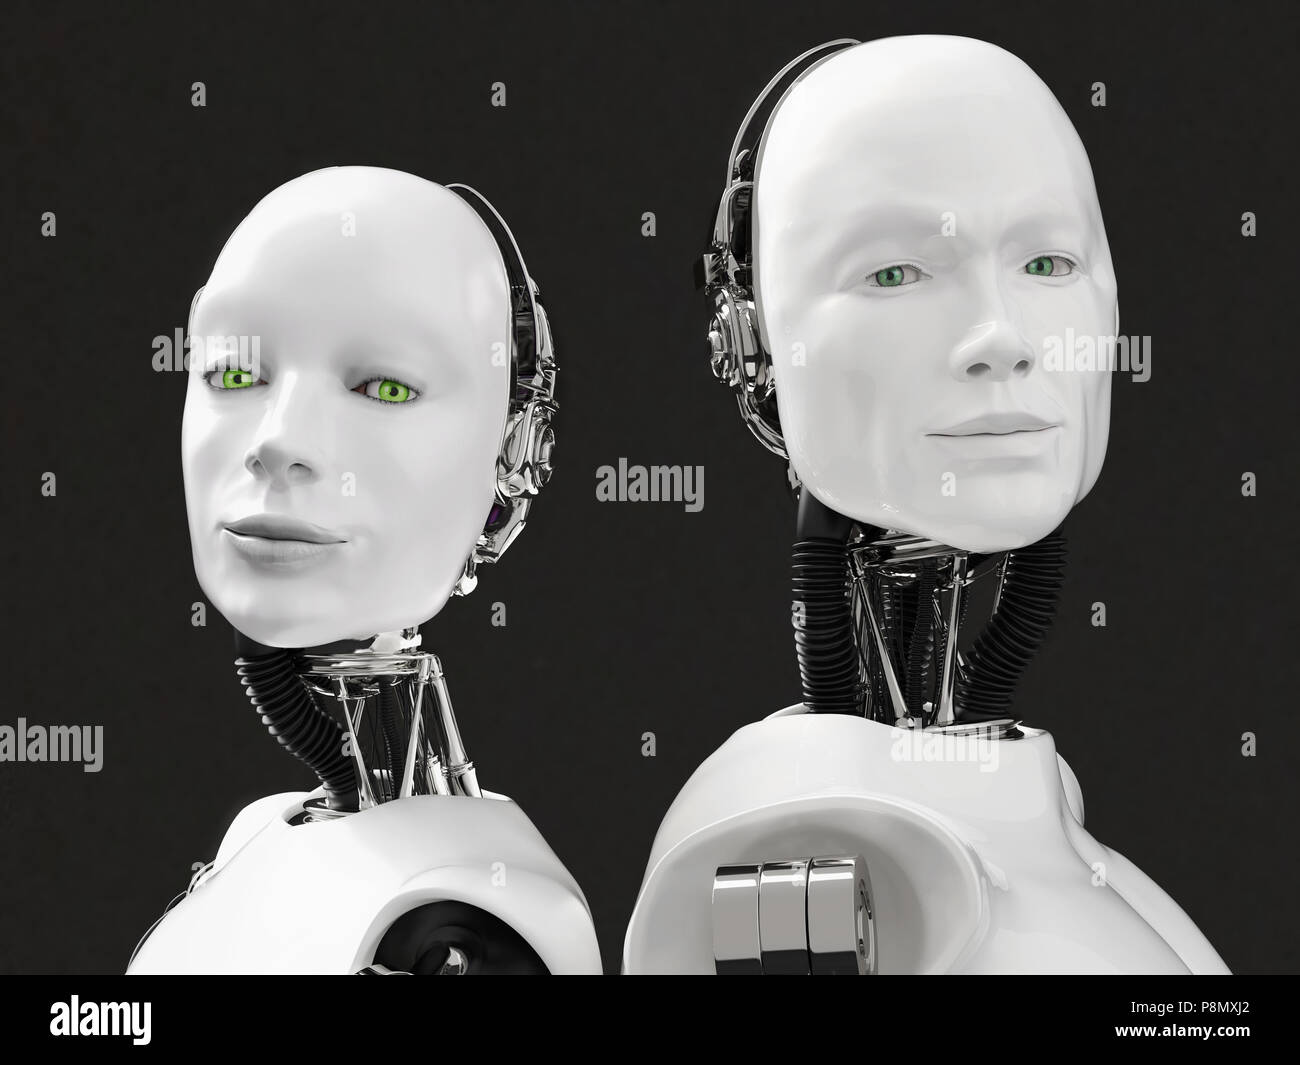 Le rendu 3D de la tête d'un robot féminin et masculin. Ils ont la tête tournée vers la caméra, debout dos à dos. Fond noir. Banque D'Images